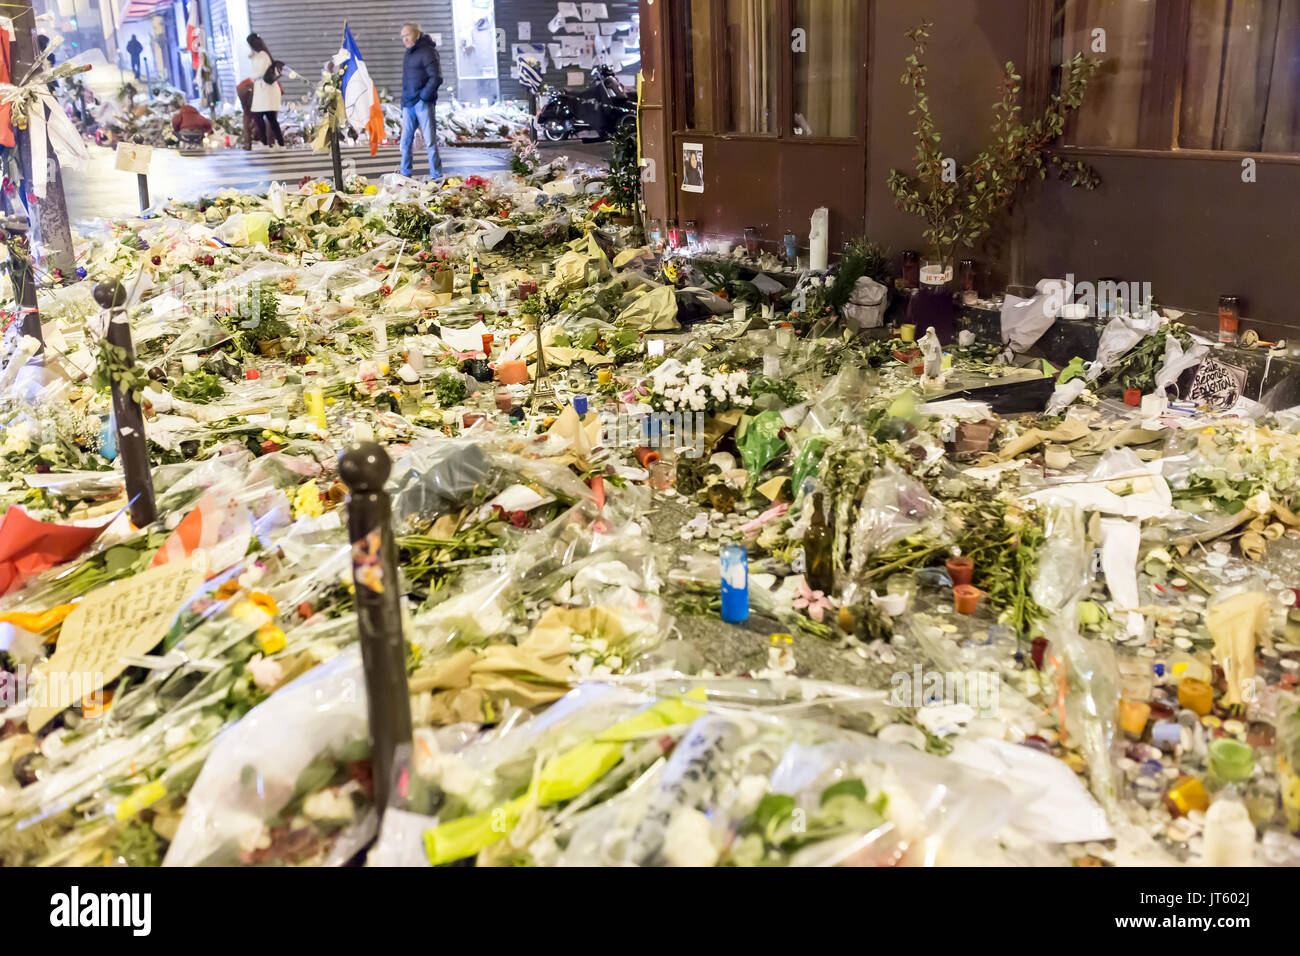 Teppich von Blumen vor Carillon Restaurant. Spontane Hommage an die Opfer der Terroranschläge in Paris, den 13. November 2015. Stockfoto